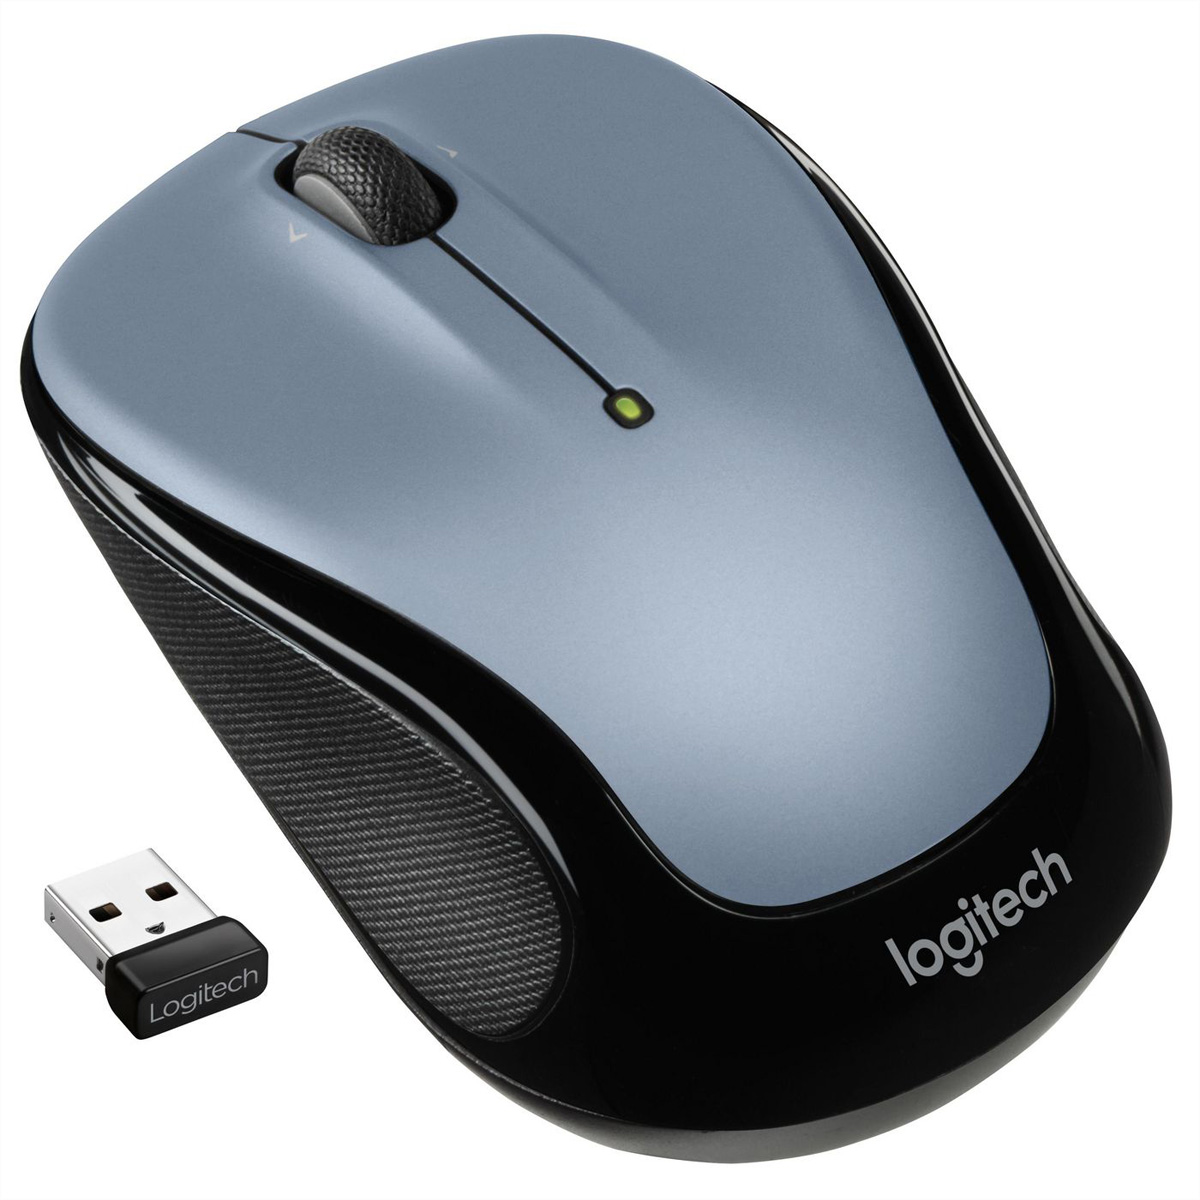 LOGITECH Wireless Mouse M325s grau